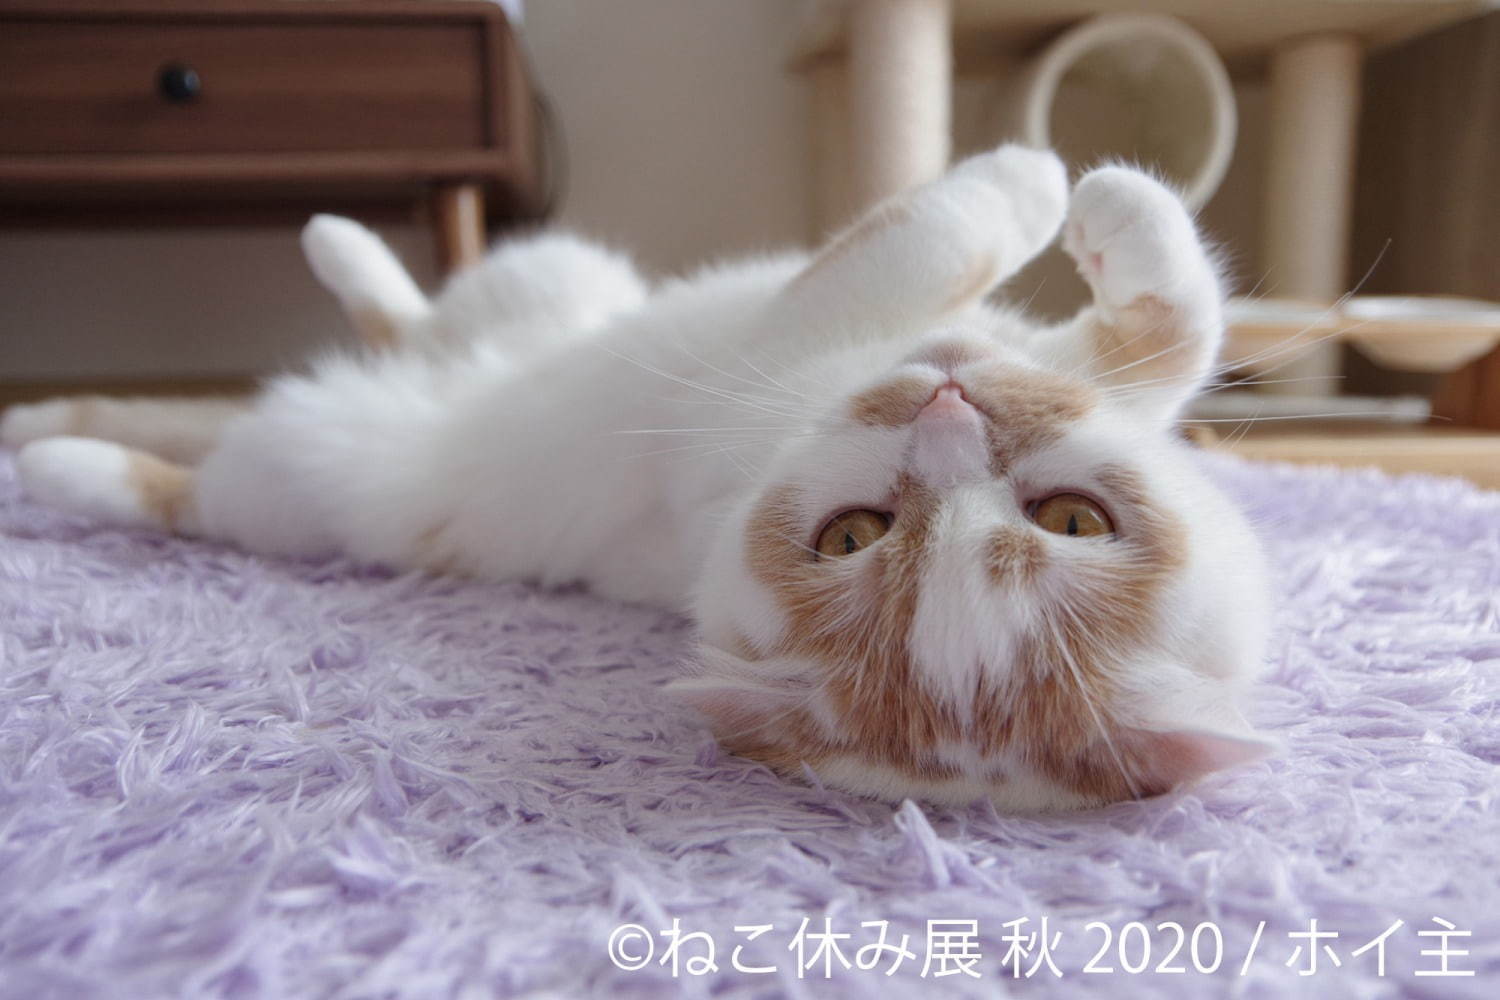 「ねこ休み展 秋 2020」名古屋で、新スター猫の写真展示＆猫アクセサリーの販売など｜写真8